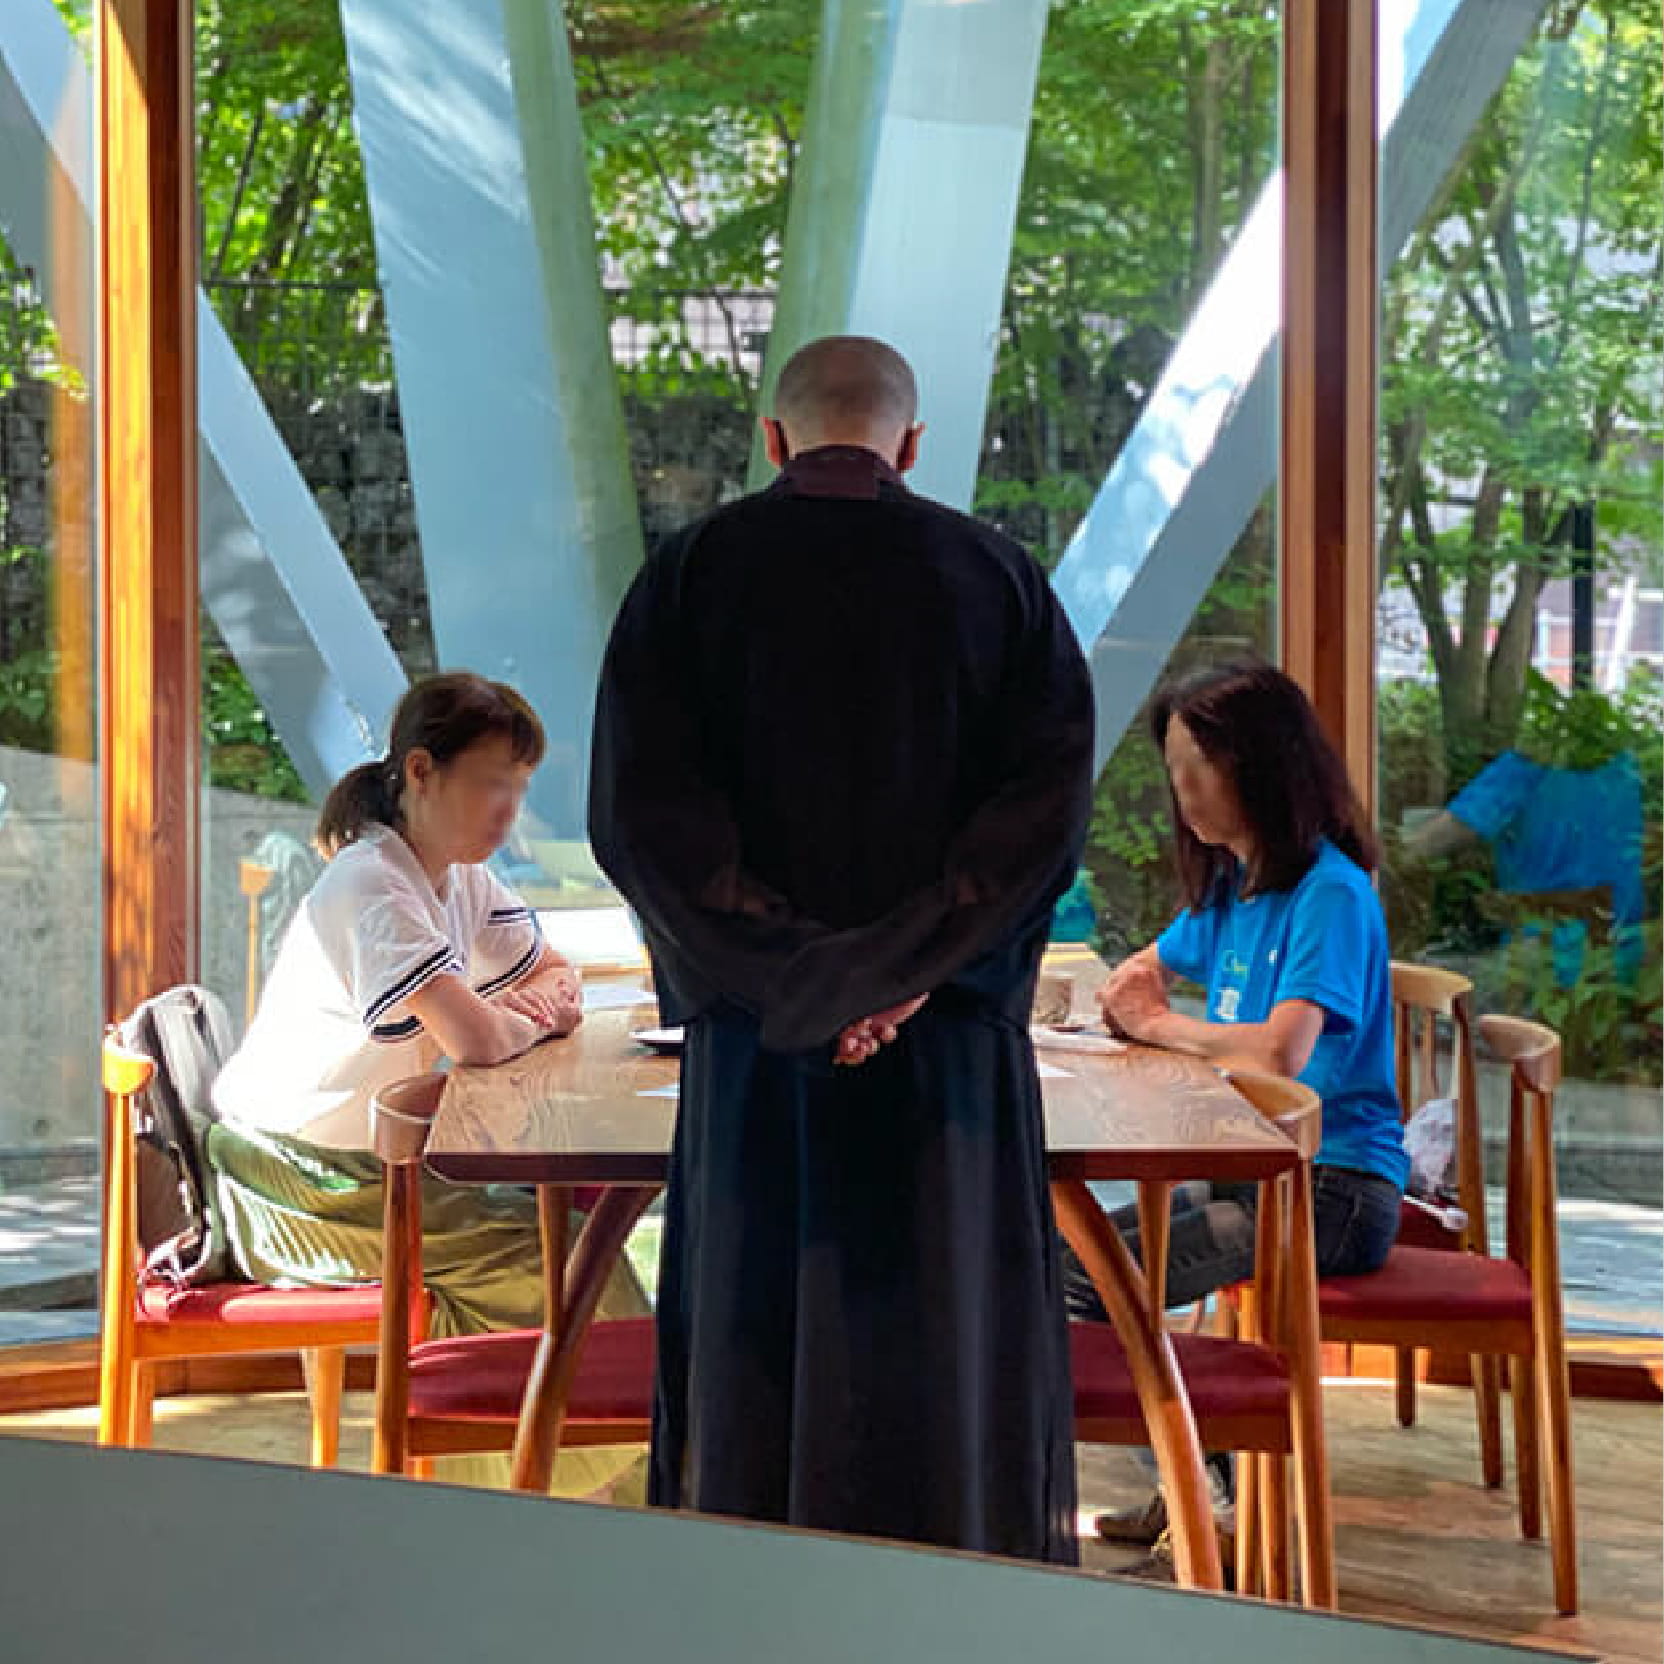 木製テーブルと椅子に座っている二人の女性と、彼女たちの前に立っている僧侶